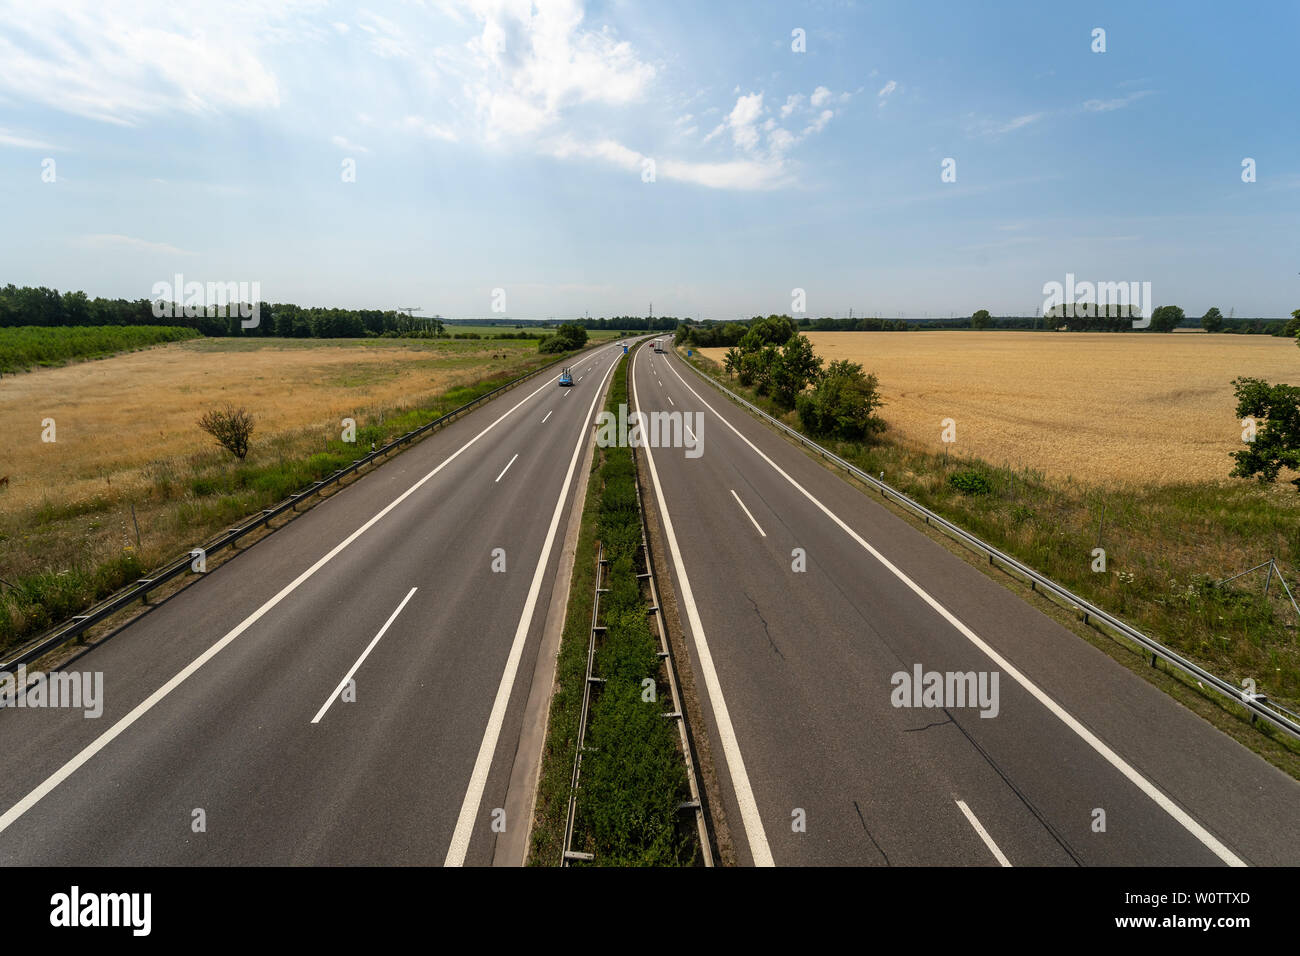 SENFTENBERG, Germania - Luglio 05, 2018: Bundesautobahn 13 (autostrada federale) è un autobahn nella Germania orientale, collegano Berlino con Dresda. Foto Stock